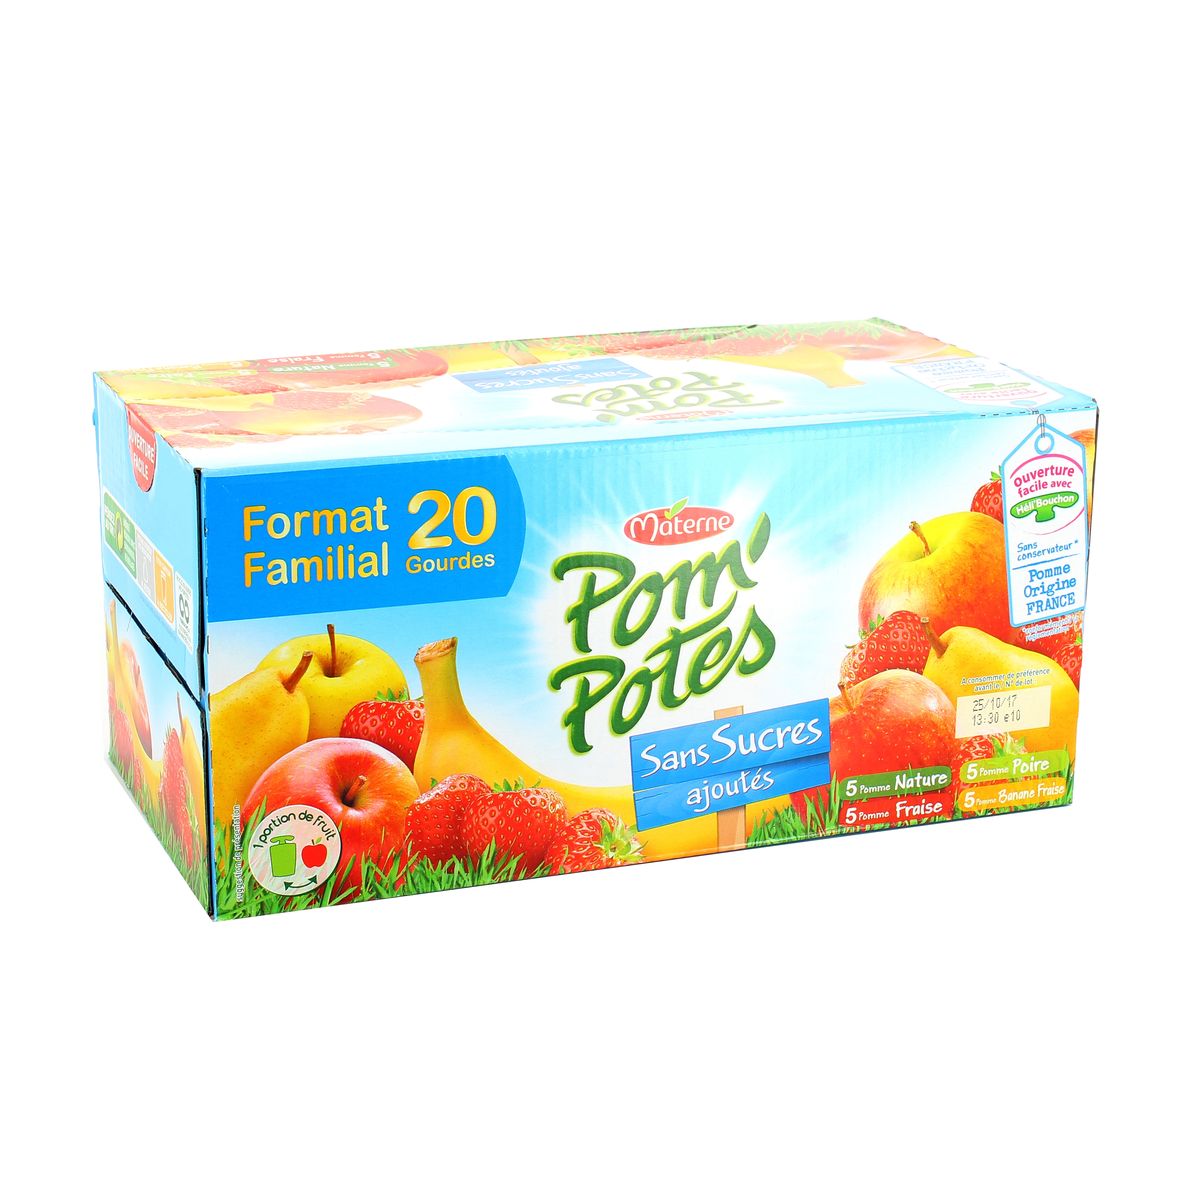 Pom'Potes 5 fruits sans sucres ajoutés, Materne (20 x 90 g)